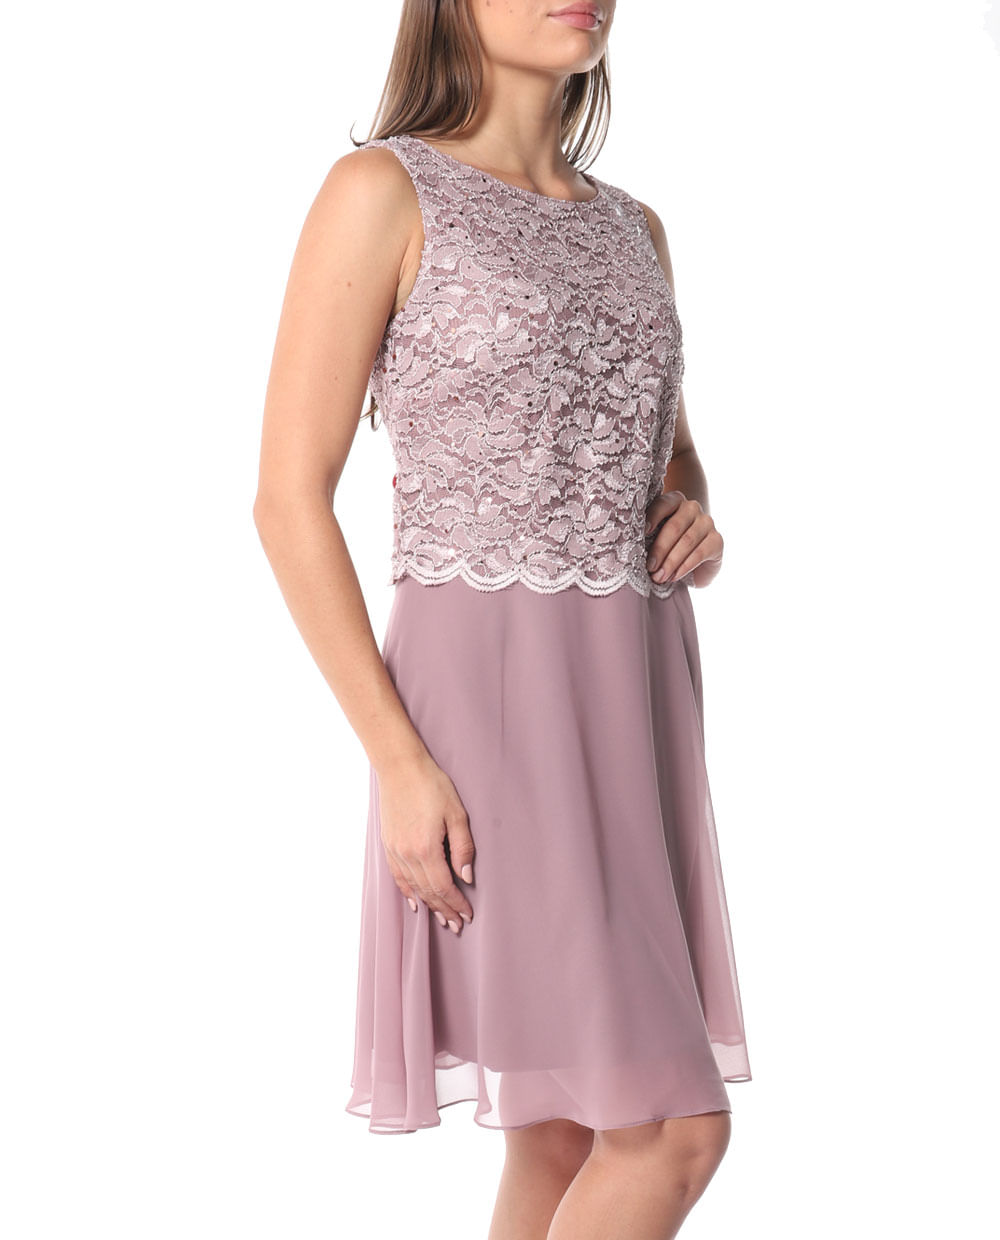 Vestido Connected Apparel formal sin mangas morado lila para dama - Siman  El Salvador